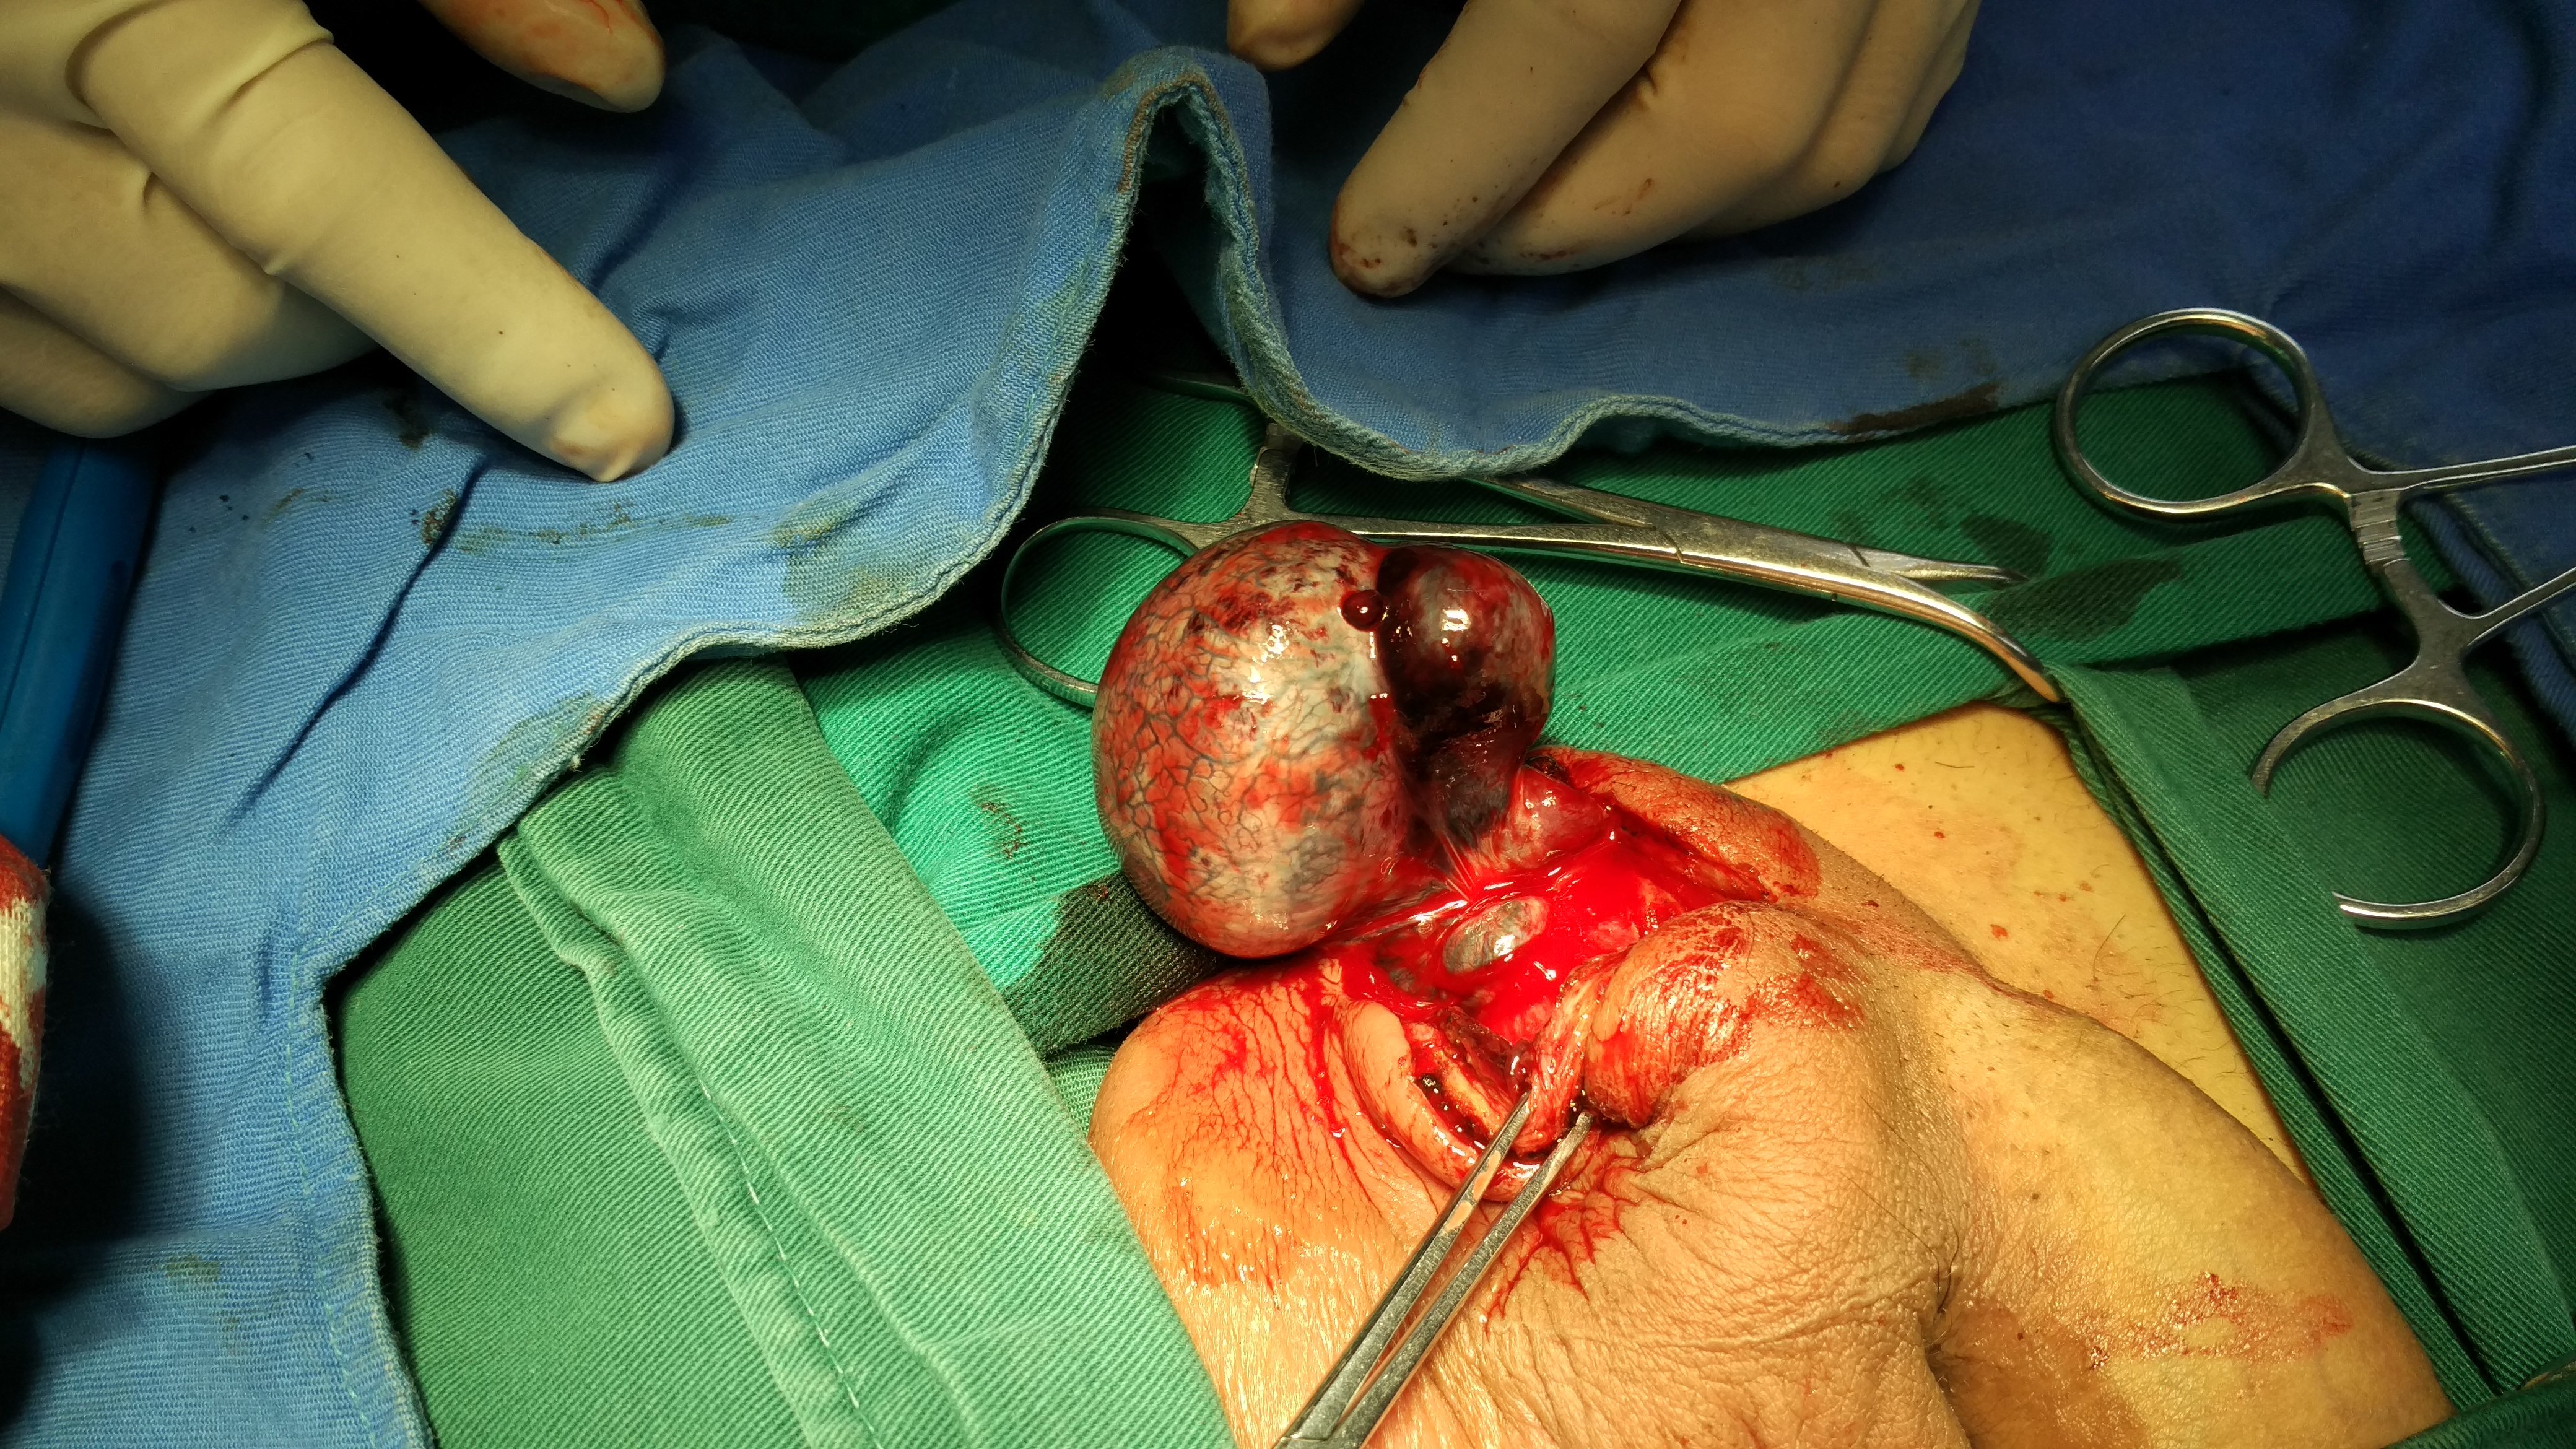 睾丸切除手术图摘除图片